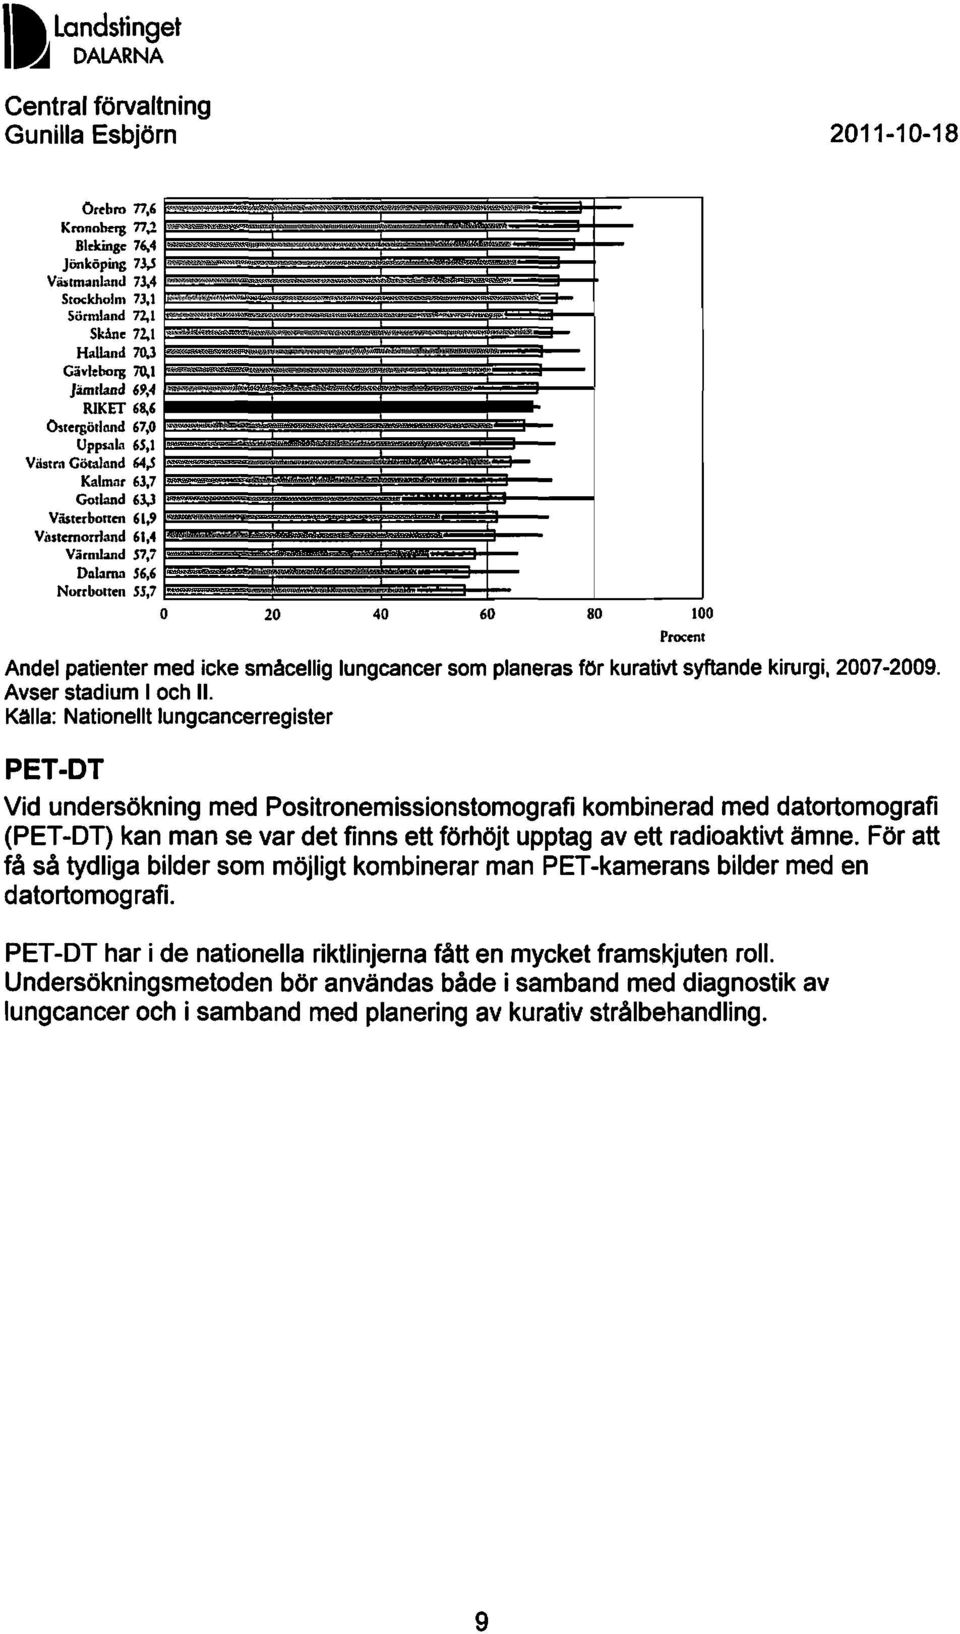 Våstemorrland 61,4 Värmland S7,7 Dnbmn S6,6 Norrbotten SS,7 O 20 40 60 80 100 Andel patienter med icke småcellig lungcancer som planeras för kurativt syftande kirurgi, 2007-2009.